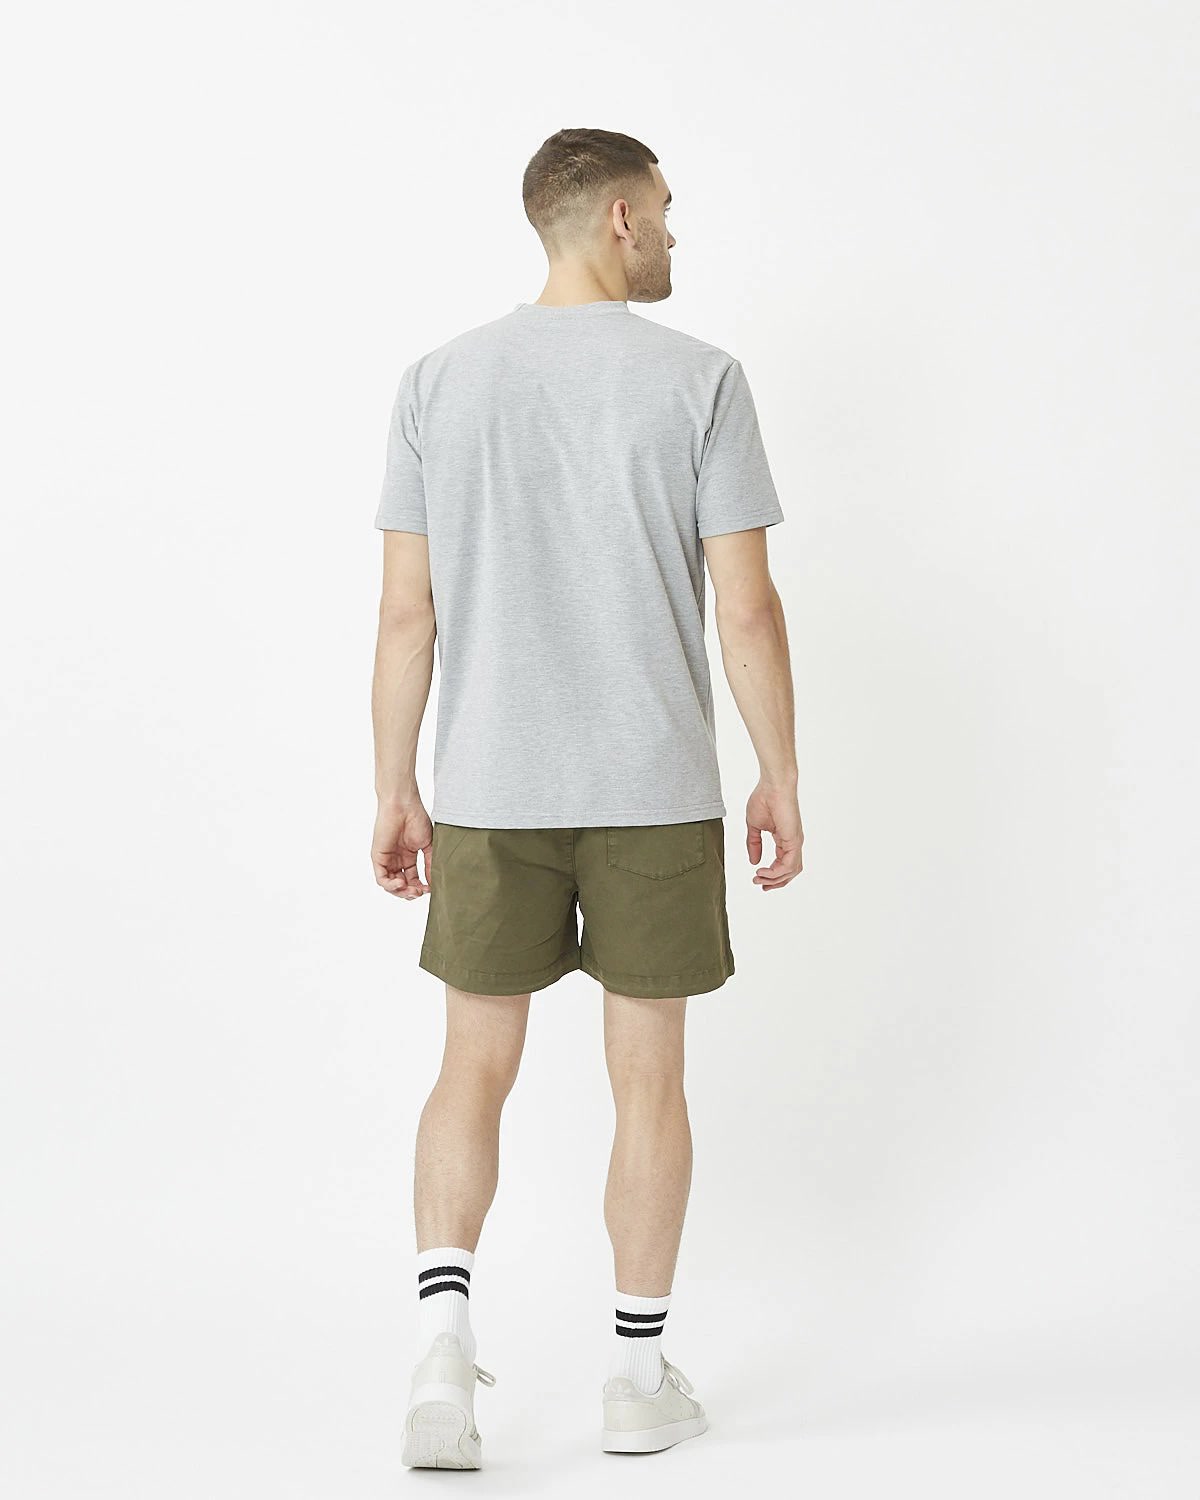 Agur 9013 Short Sleeved T-Shirt